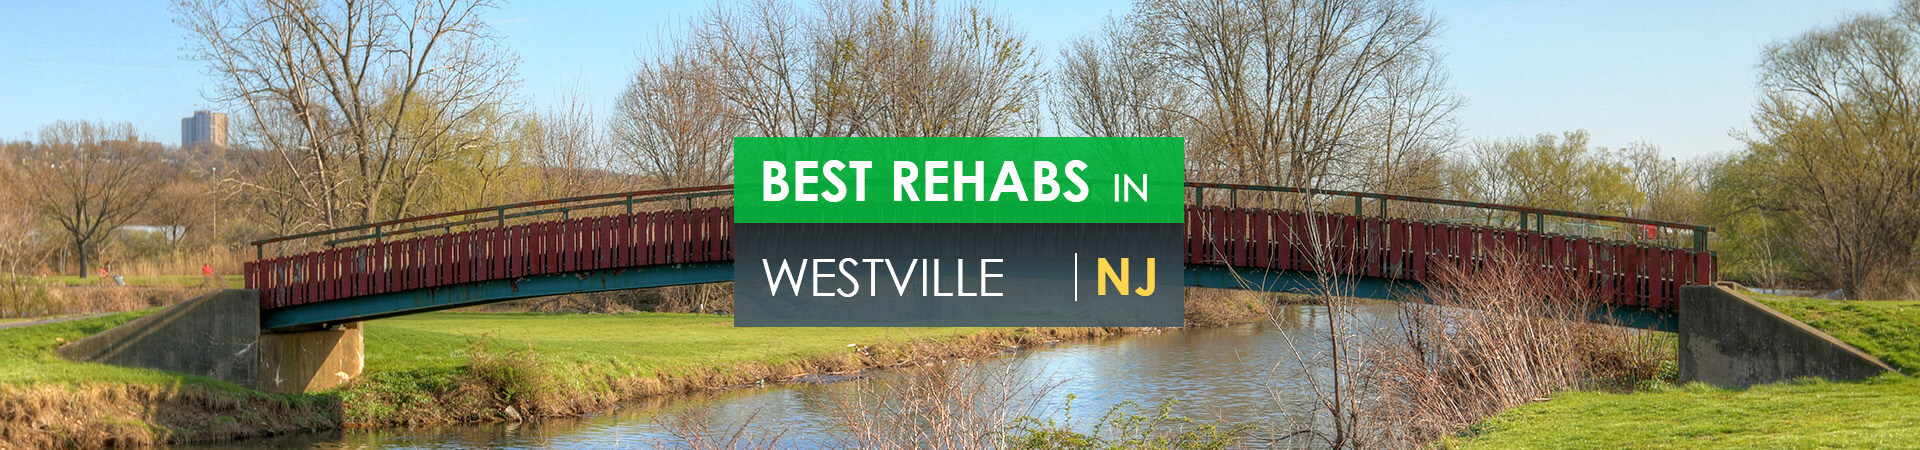 Best rehabs in Westville, NJ